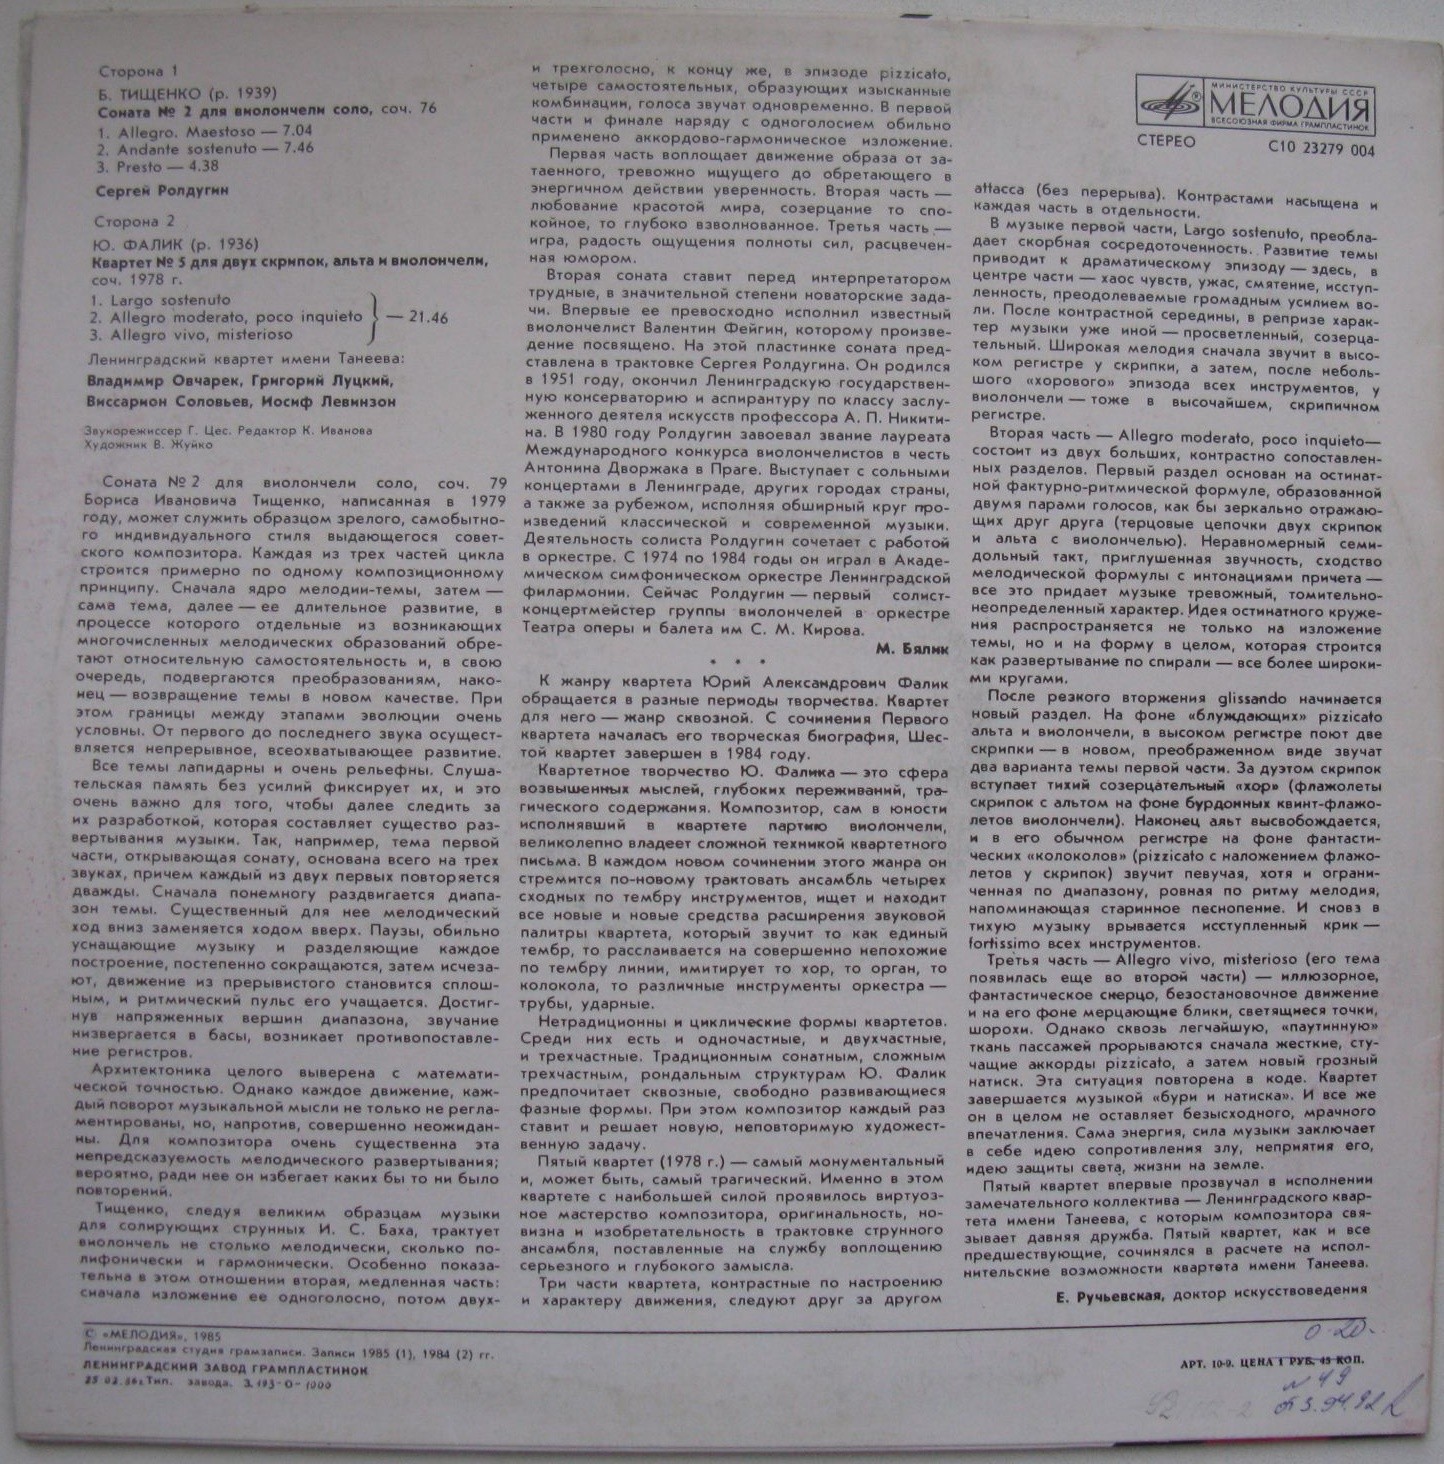 Б. ТИЩЕНКО (1939): Соната № 2 для виолончели соло, соч. 76. С. Ролдугин / Ю. ФАЛИК (1936): Квартет № 5 для двух скрипок, альта и виолончели.